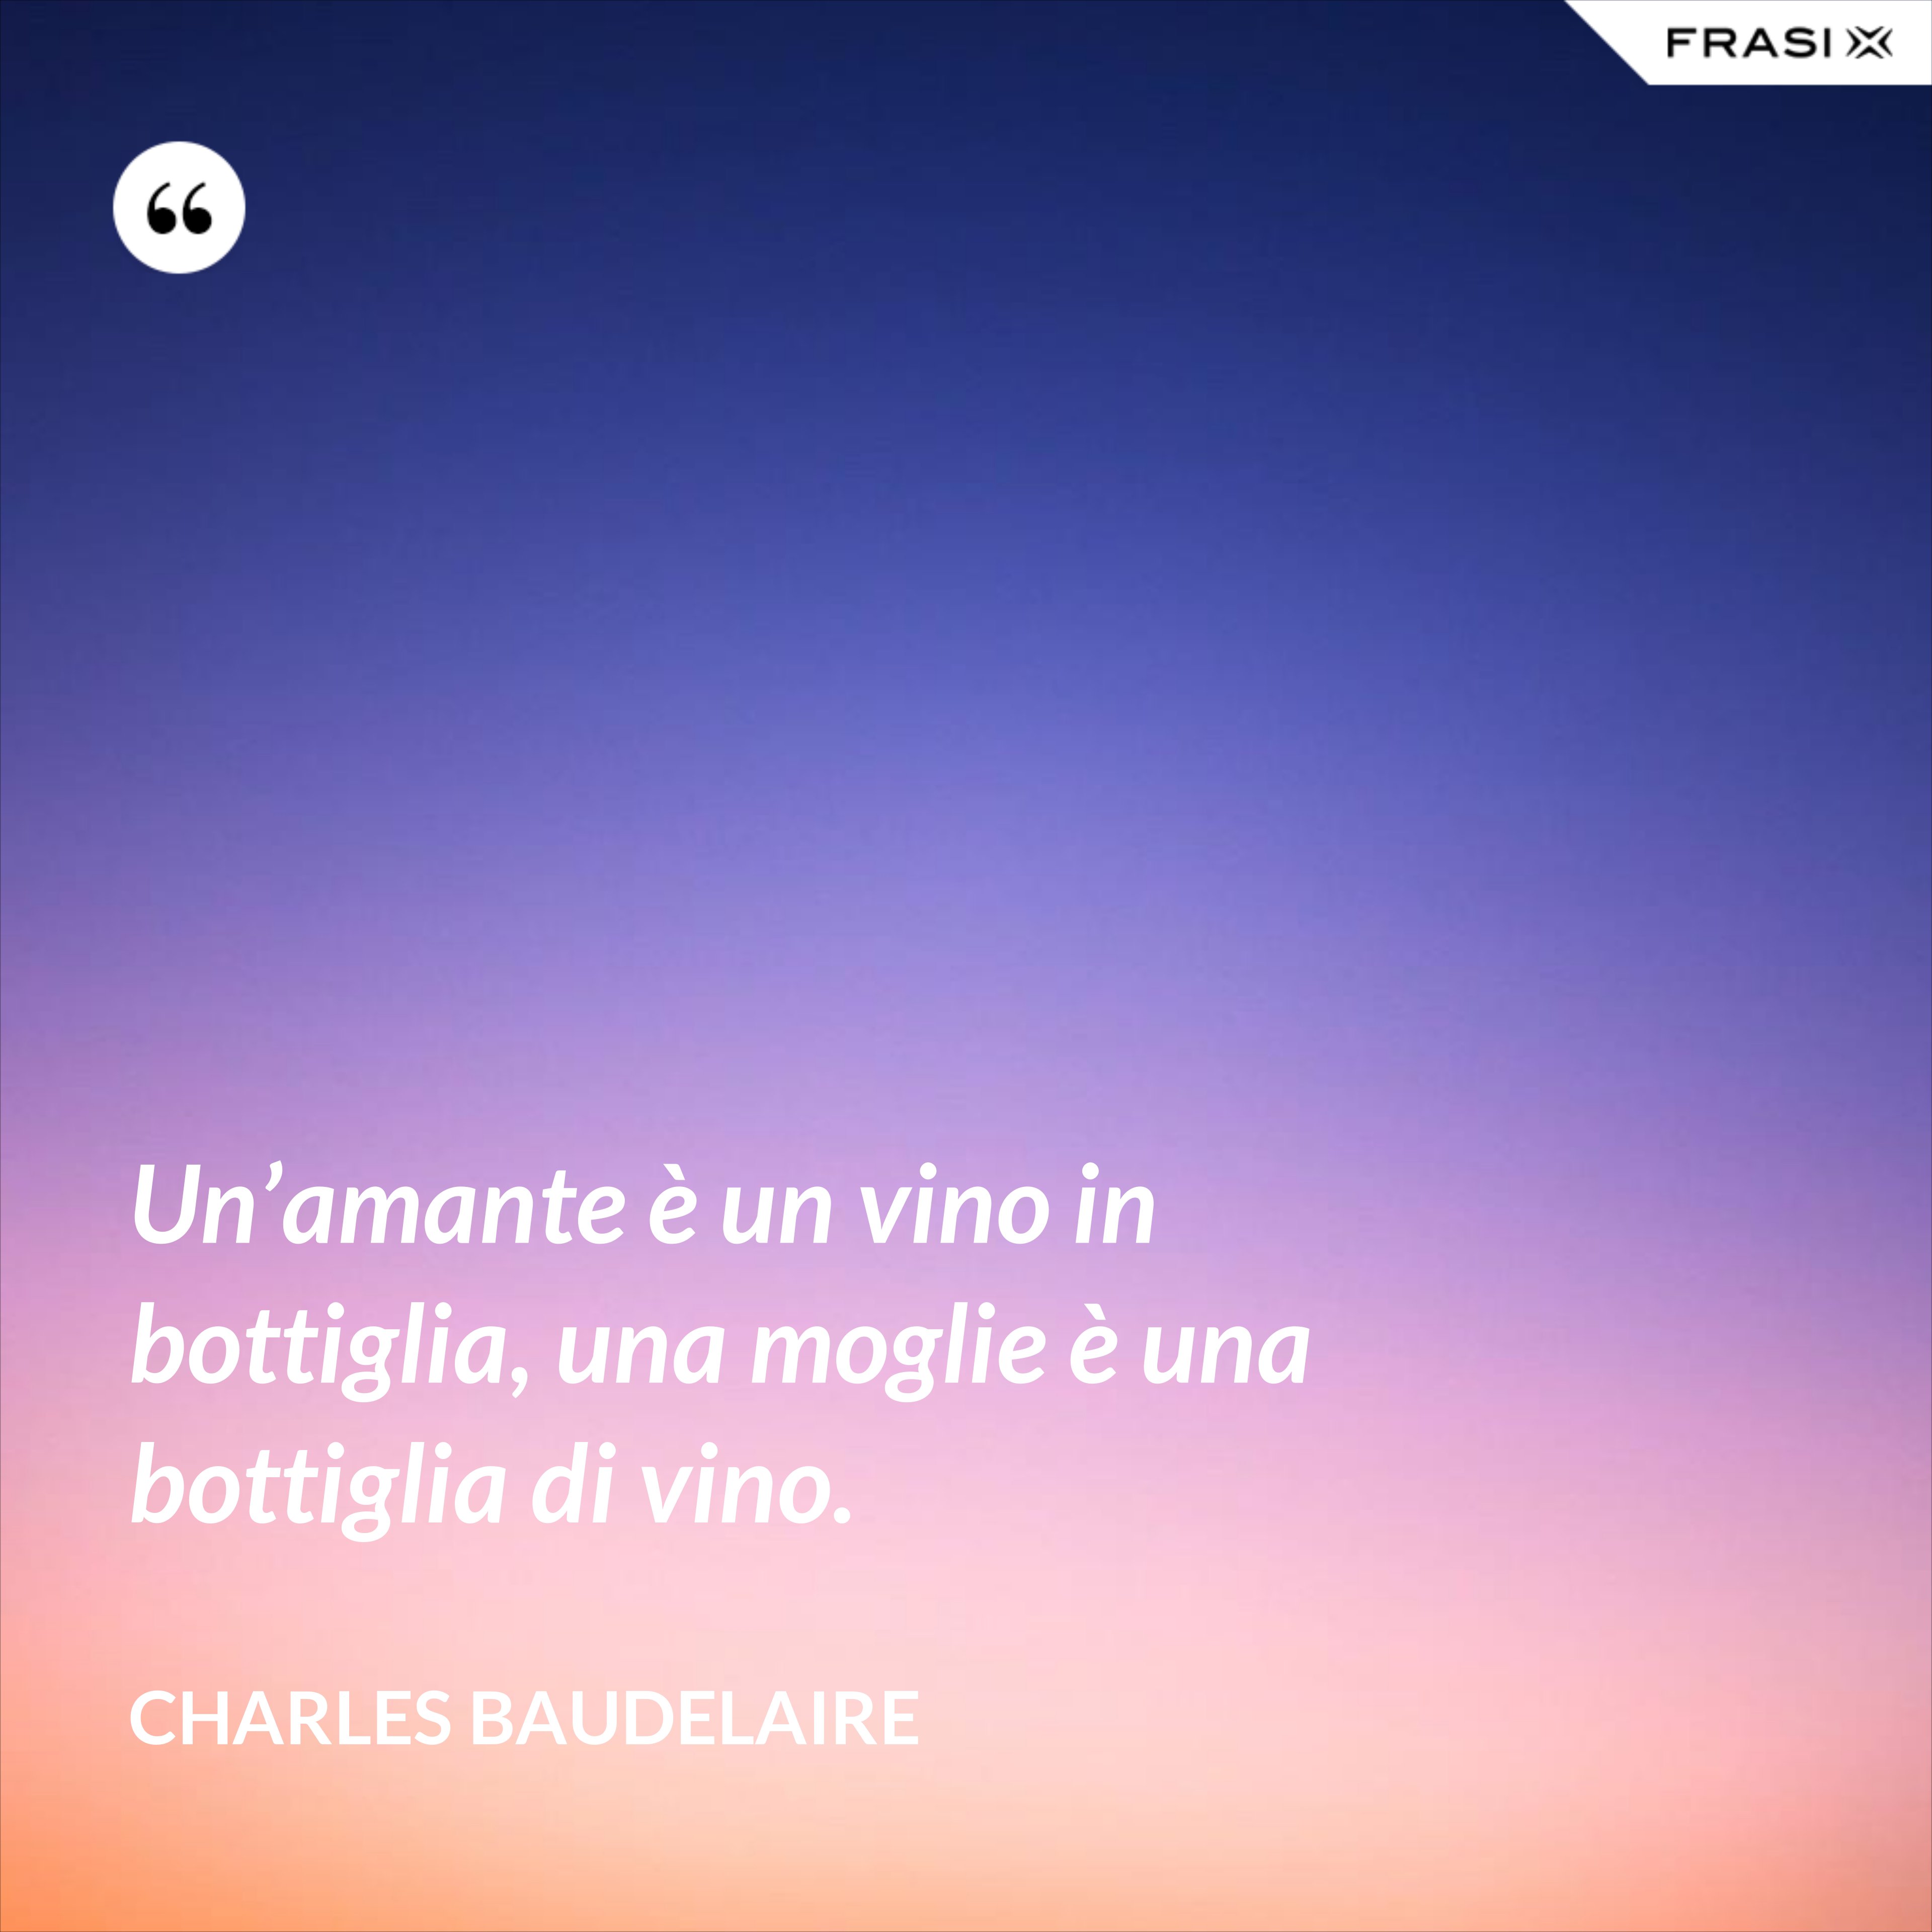 Un’amante è un vino in bottiglia, una moglie è una bottiglia di vino. - Charles Baudelaire